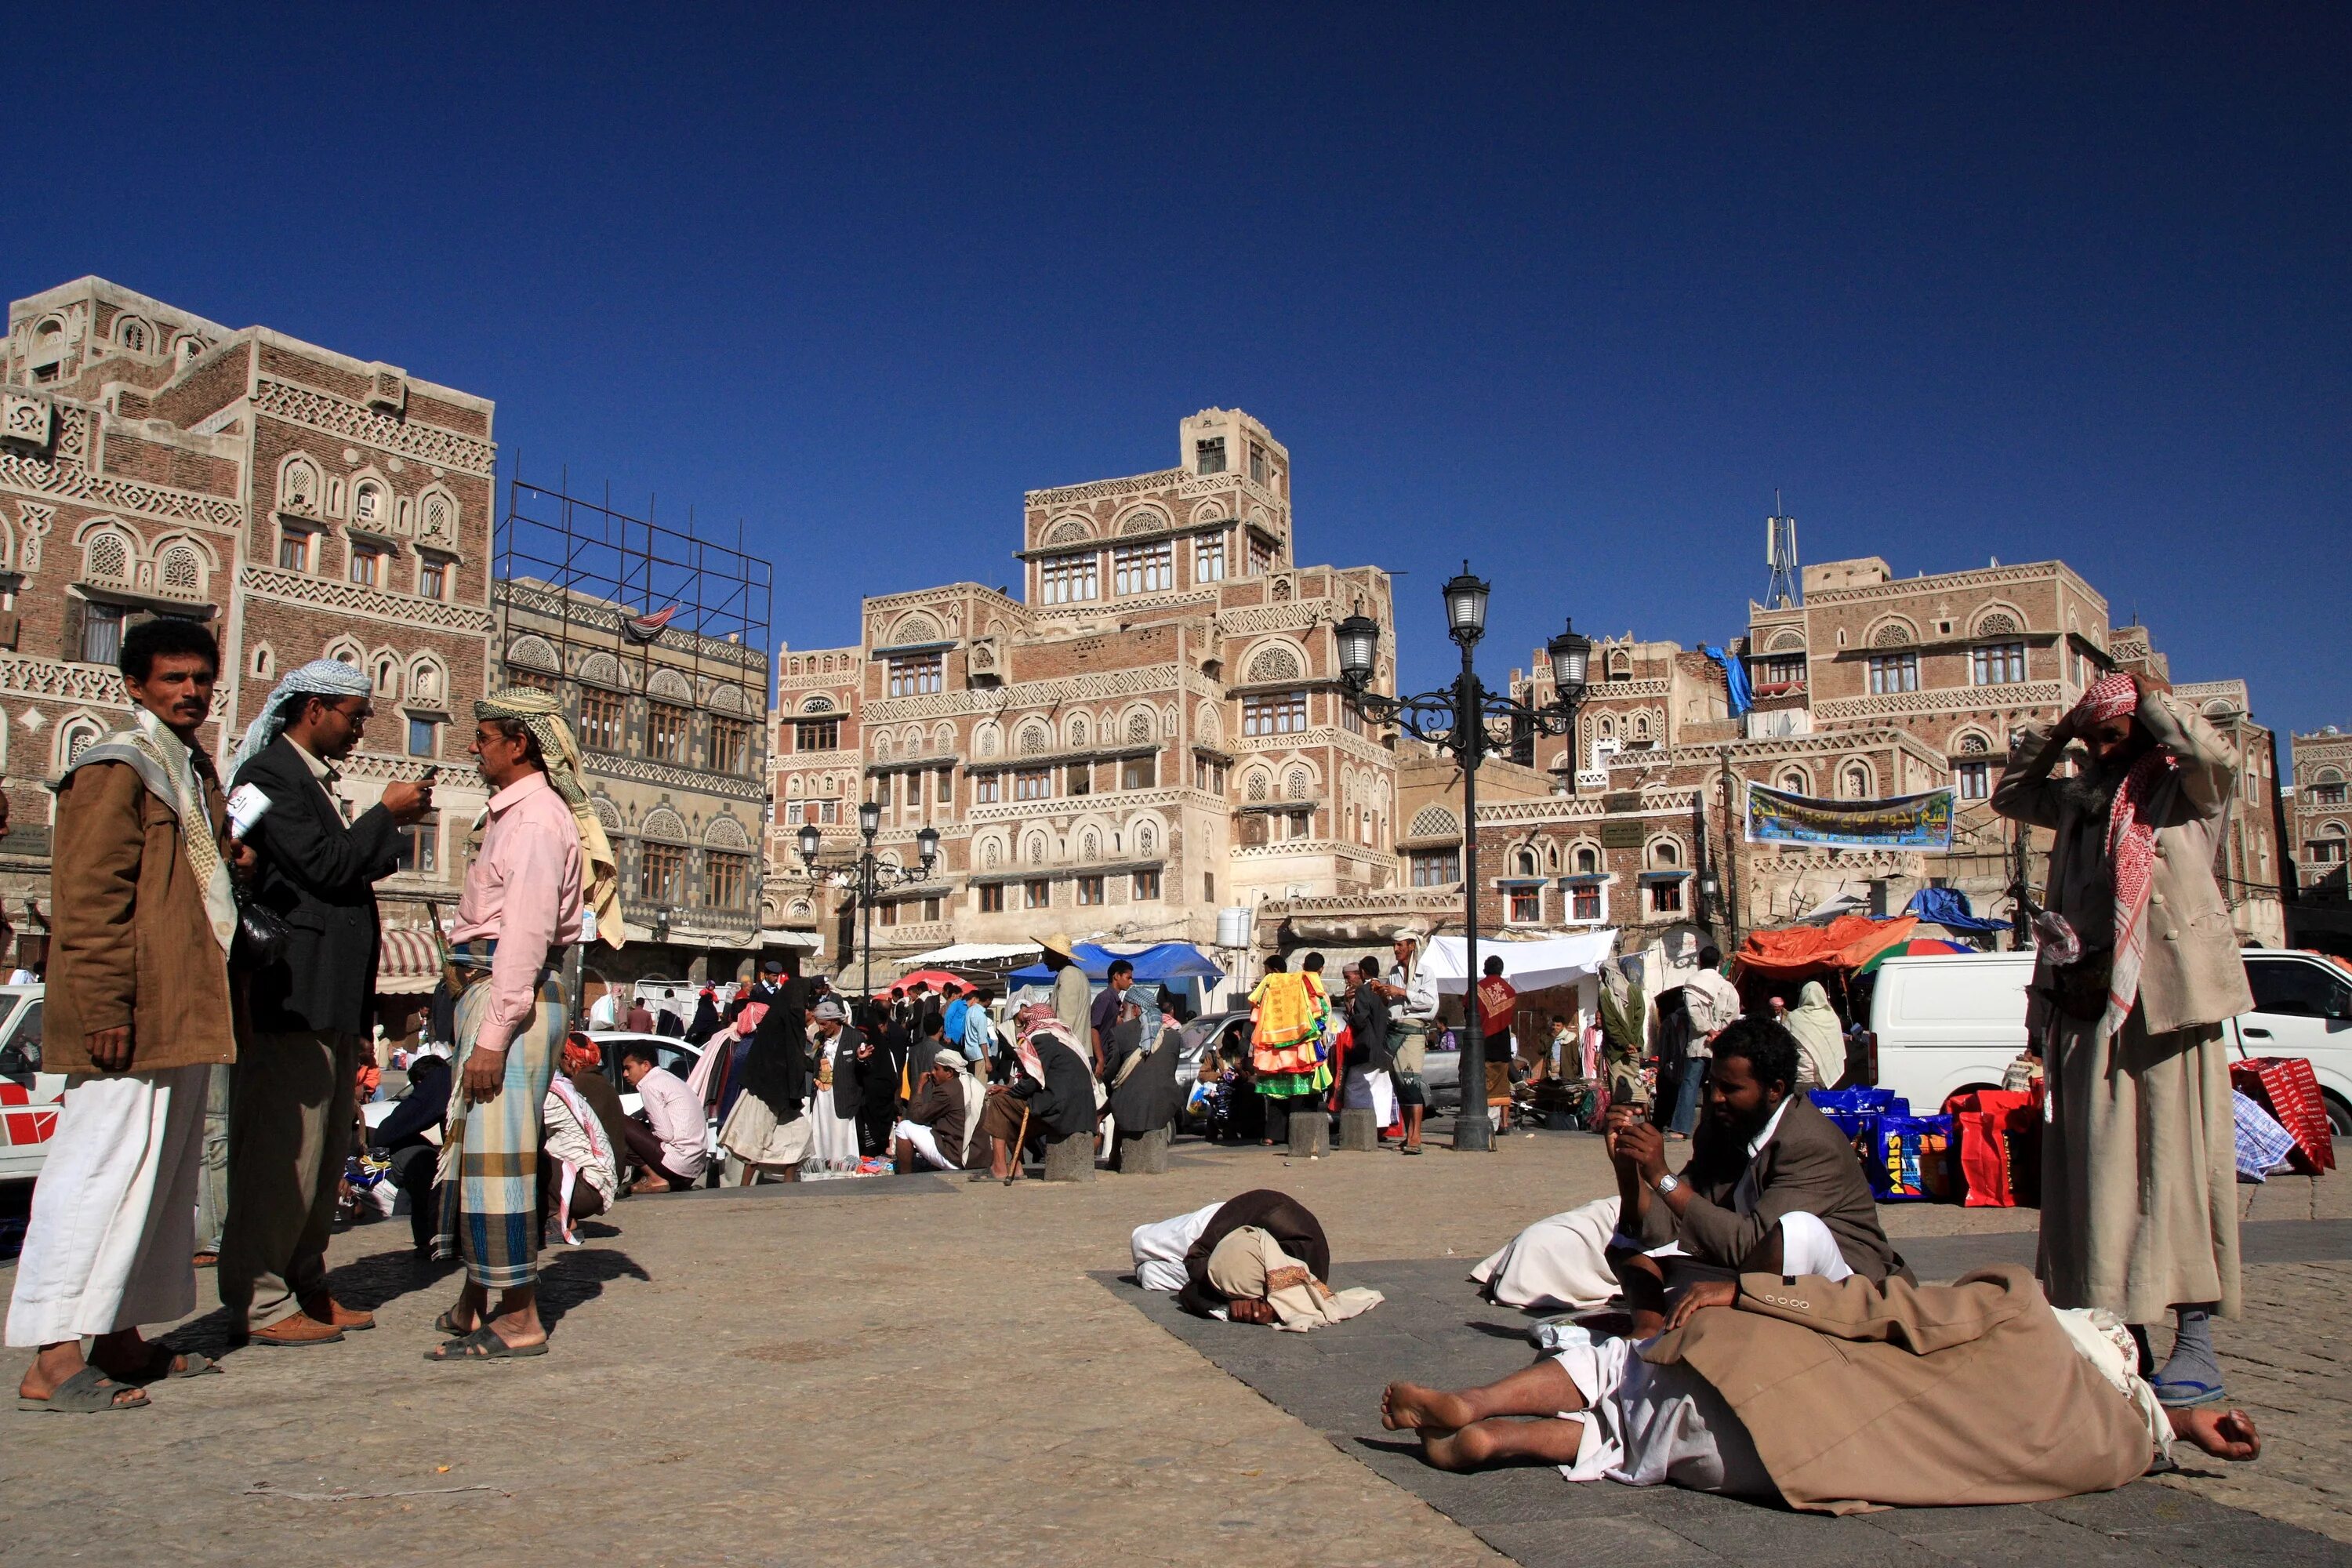 Население города сана. Фиакия Йемен. Санаа Йемен. Сана Йемен улицы. Сана Йемен 2010.